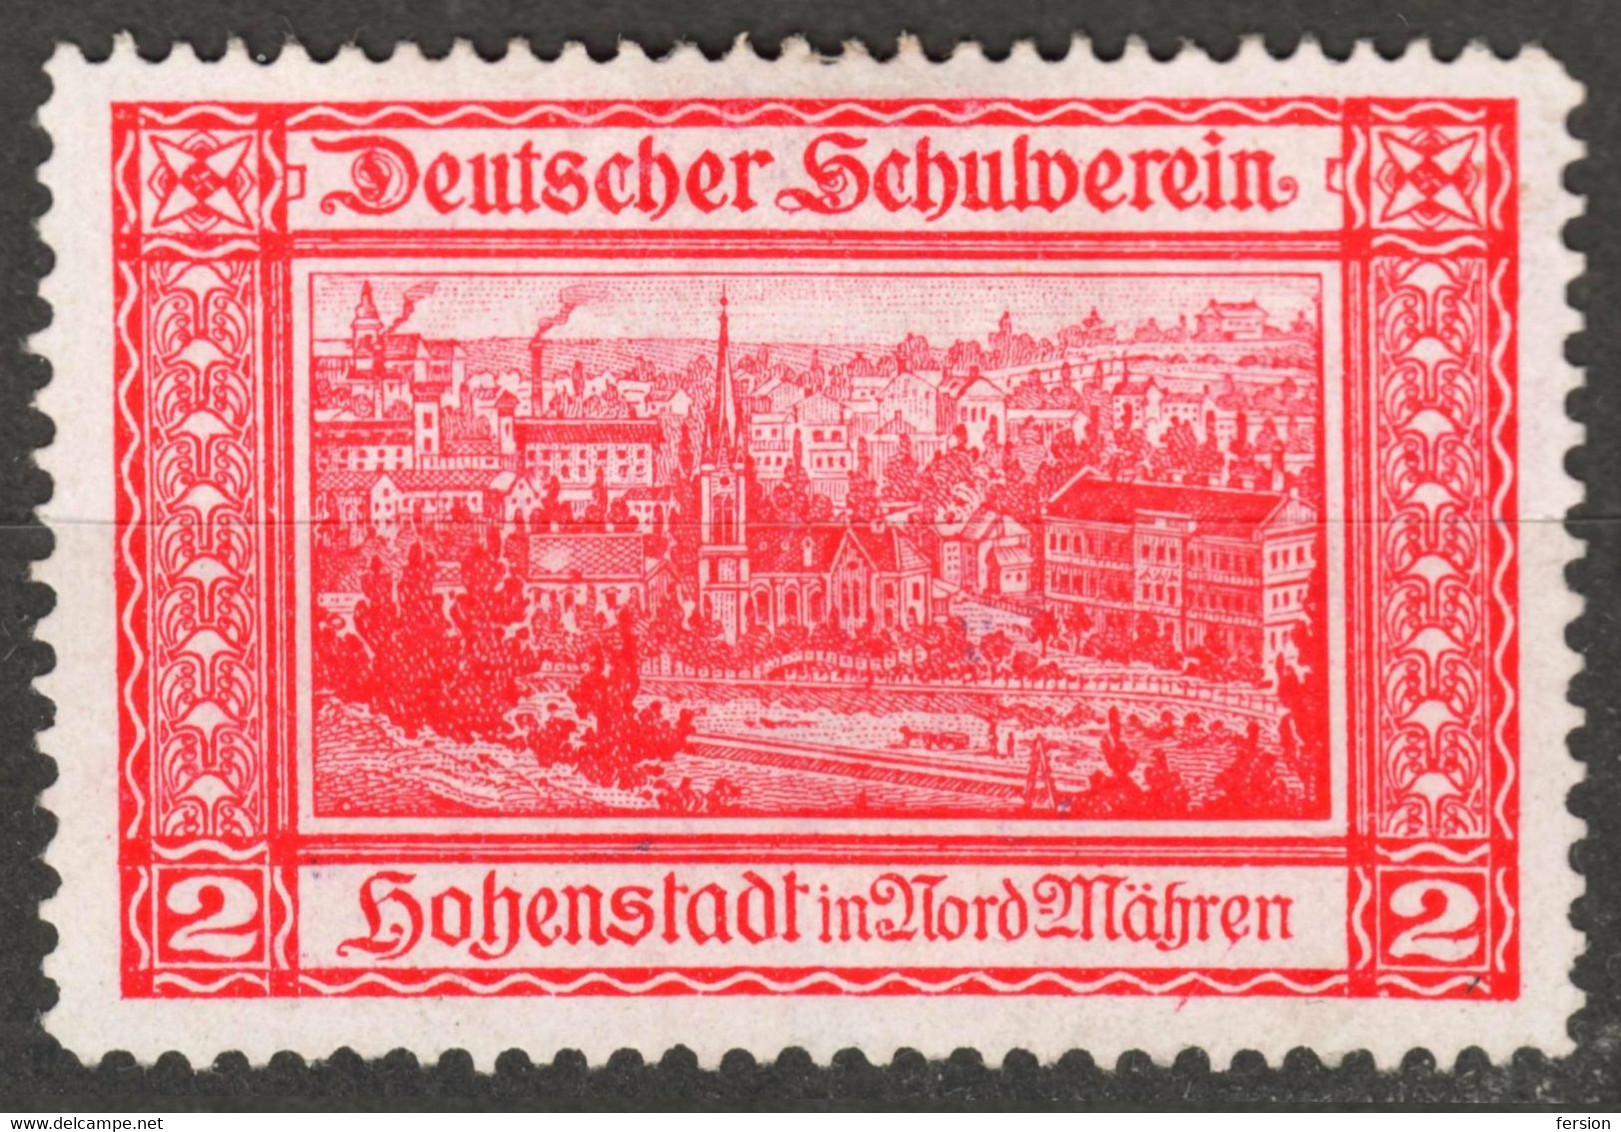 Zábřeh Hohenstadt Nordmähren Czechia Bohemia Germany Austria Label Cinderella Vignette SCHOOL Deutscher Schulverein - ...-1918 Prefilatelia